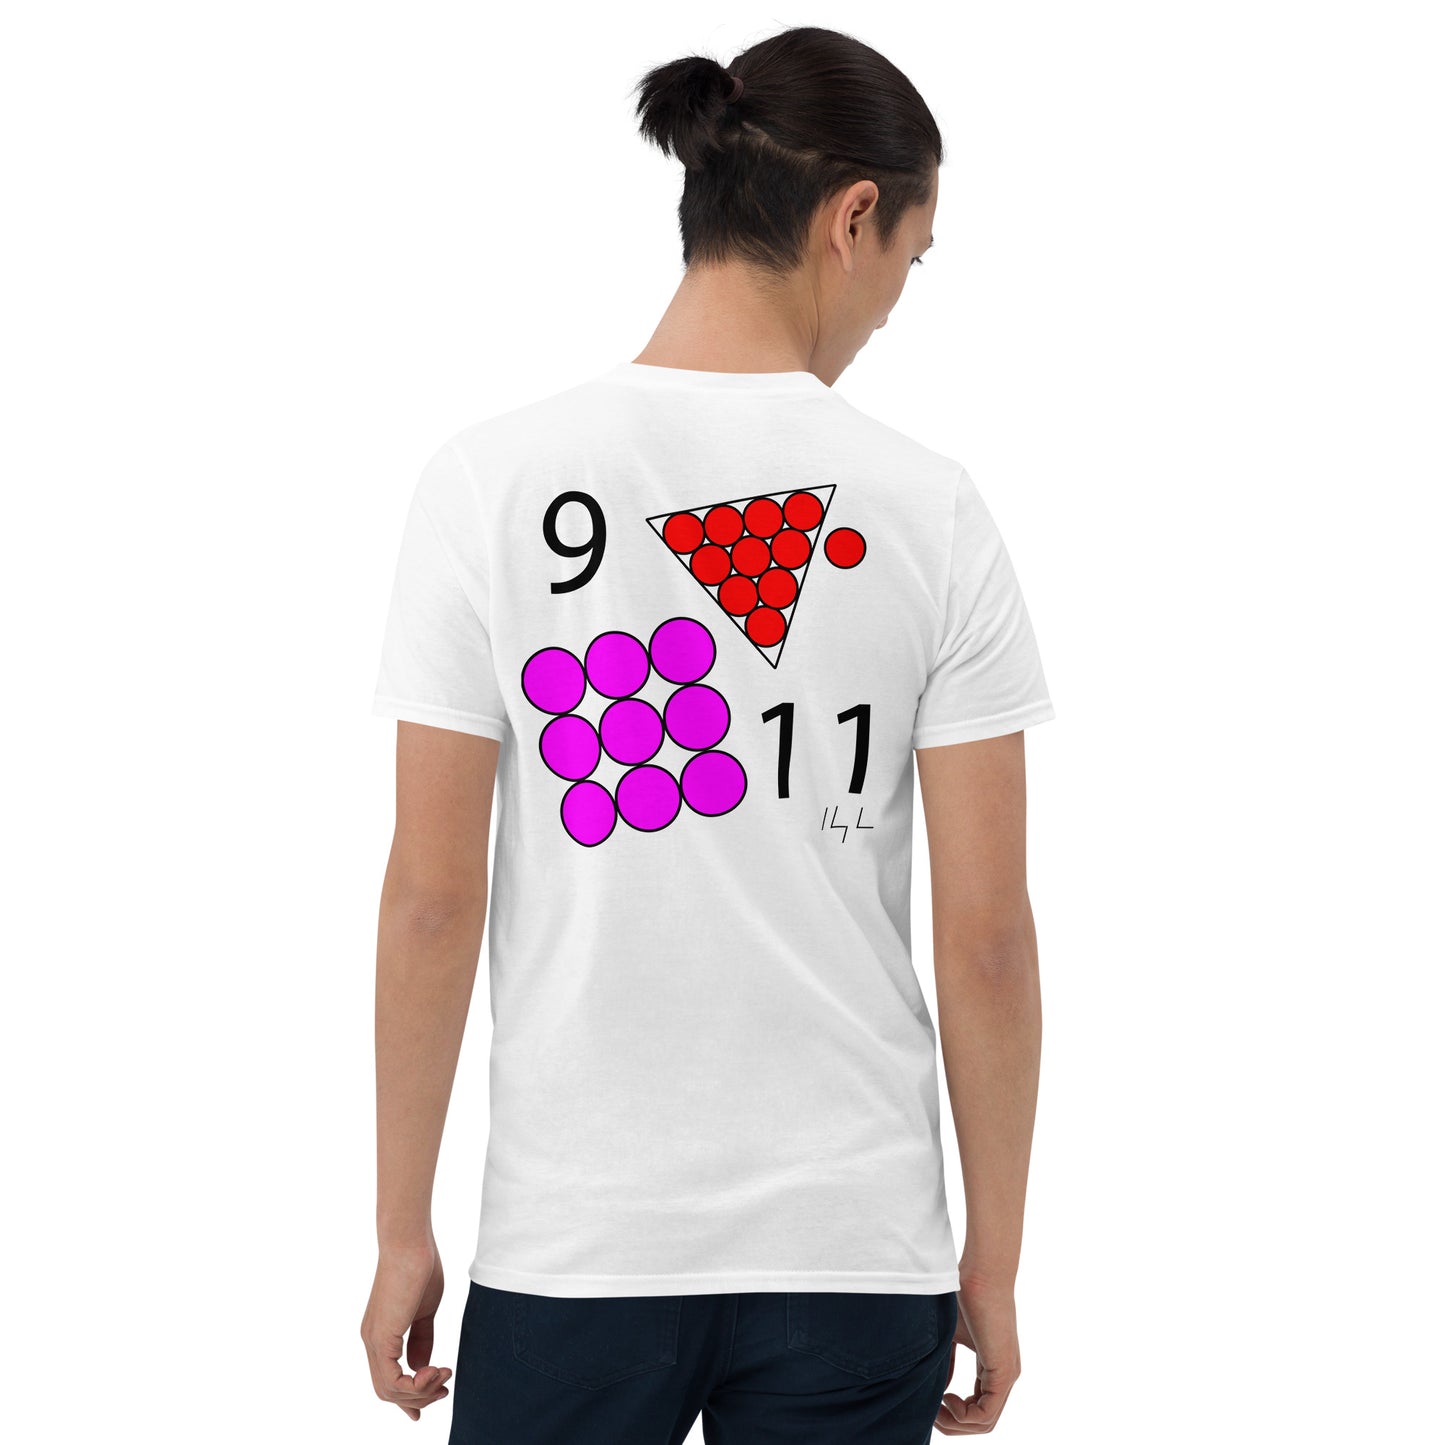 September 11th Pink T-Shirt at 9:11 0911